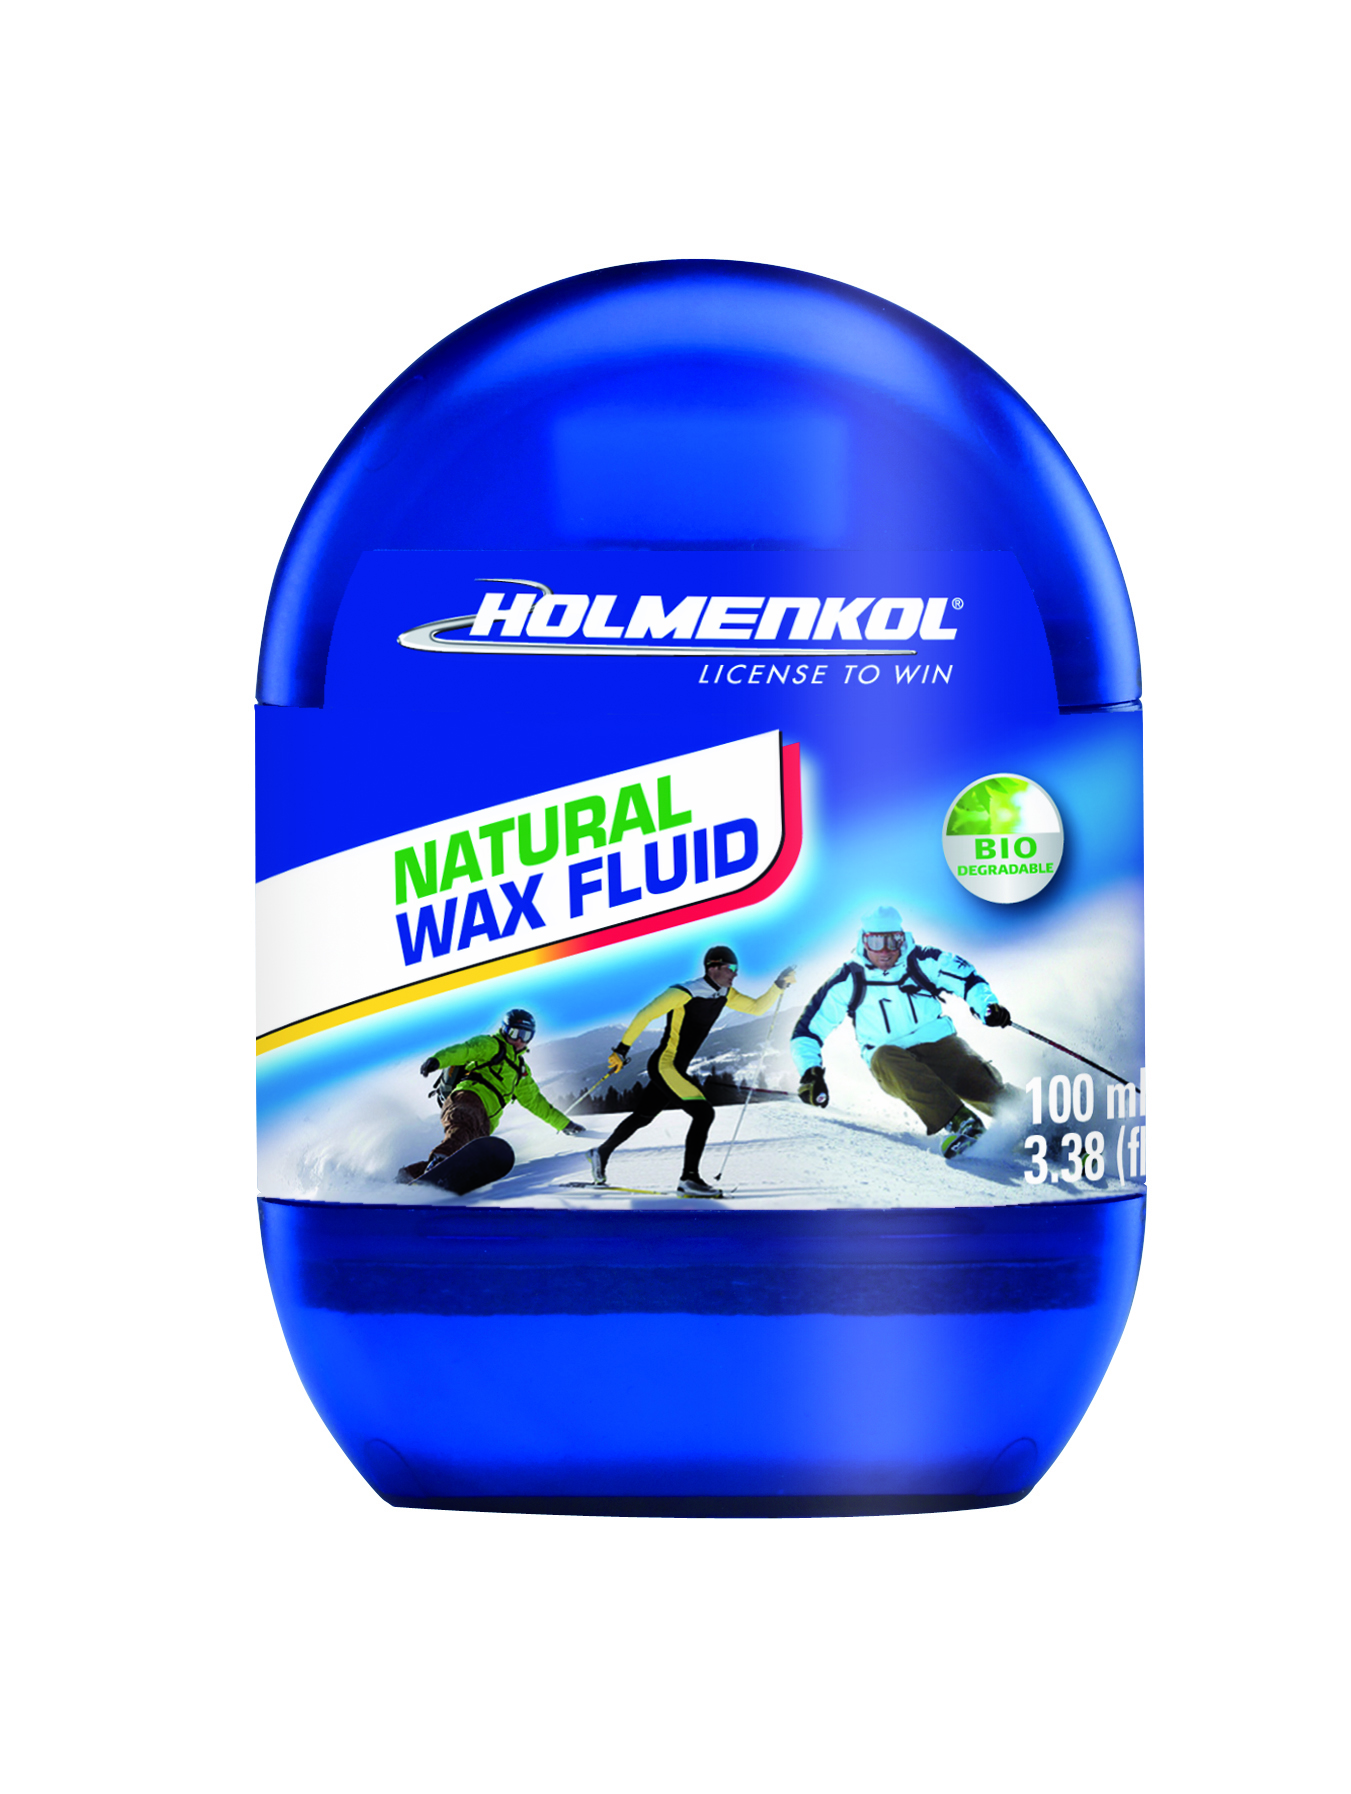 Holmenkol Natural Wax Fluid Skiwachs 100ml